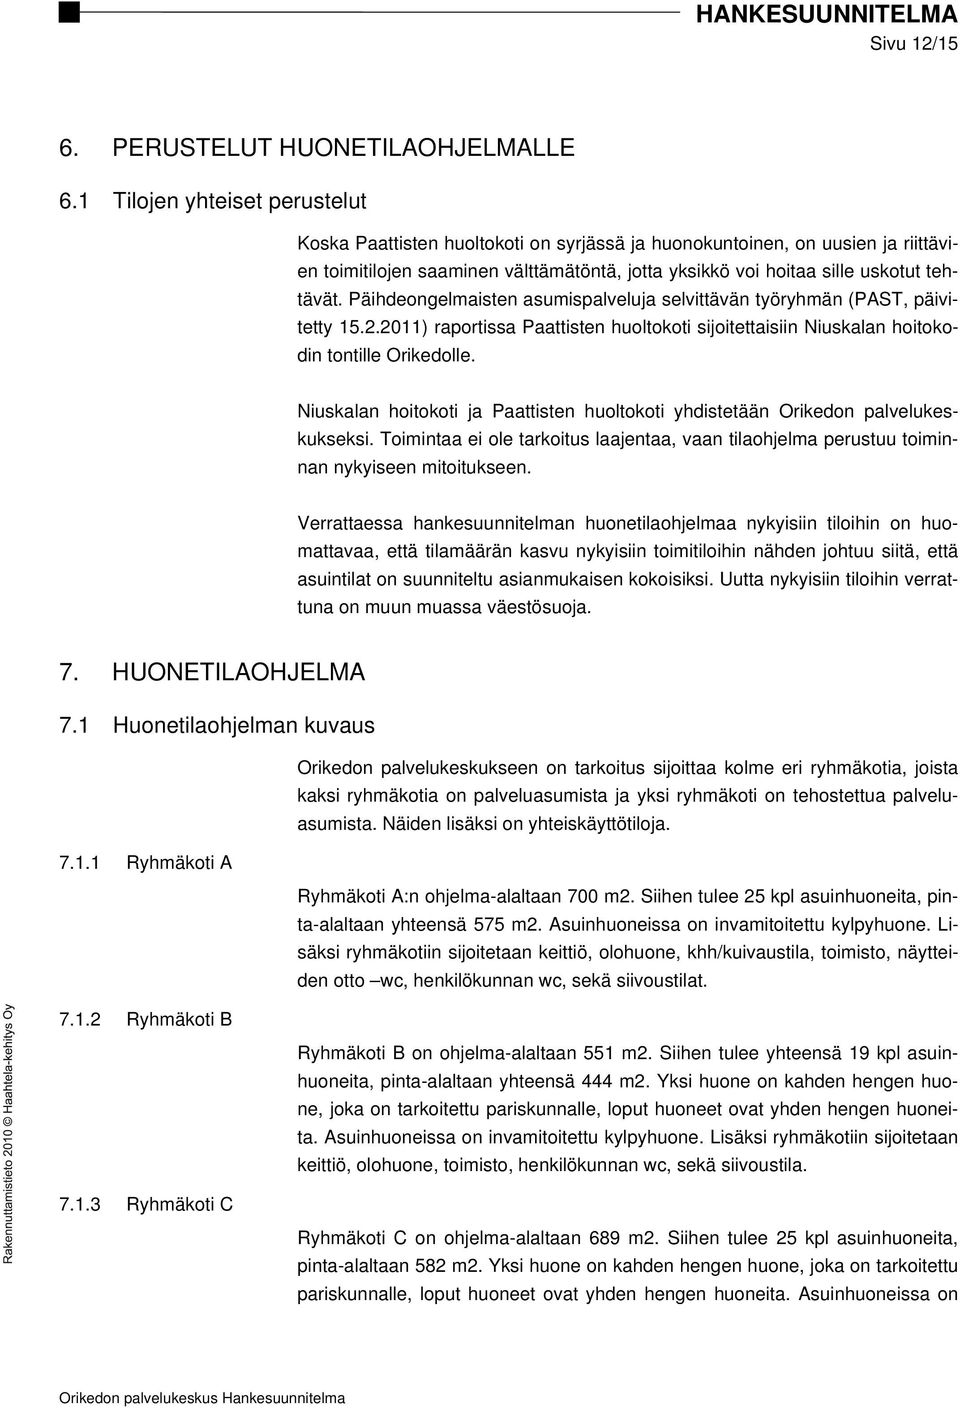 Päihdeongelmaisten asumispalveluja selvittävän työryhmän (PAST, päivitetty 15.2.2011) raportissa Paattisten huoltokoti sijoitettaisiin Niuskalan hoitokodin tontille Orikedolle.